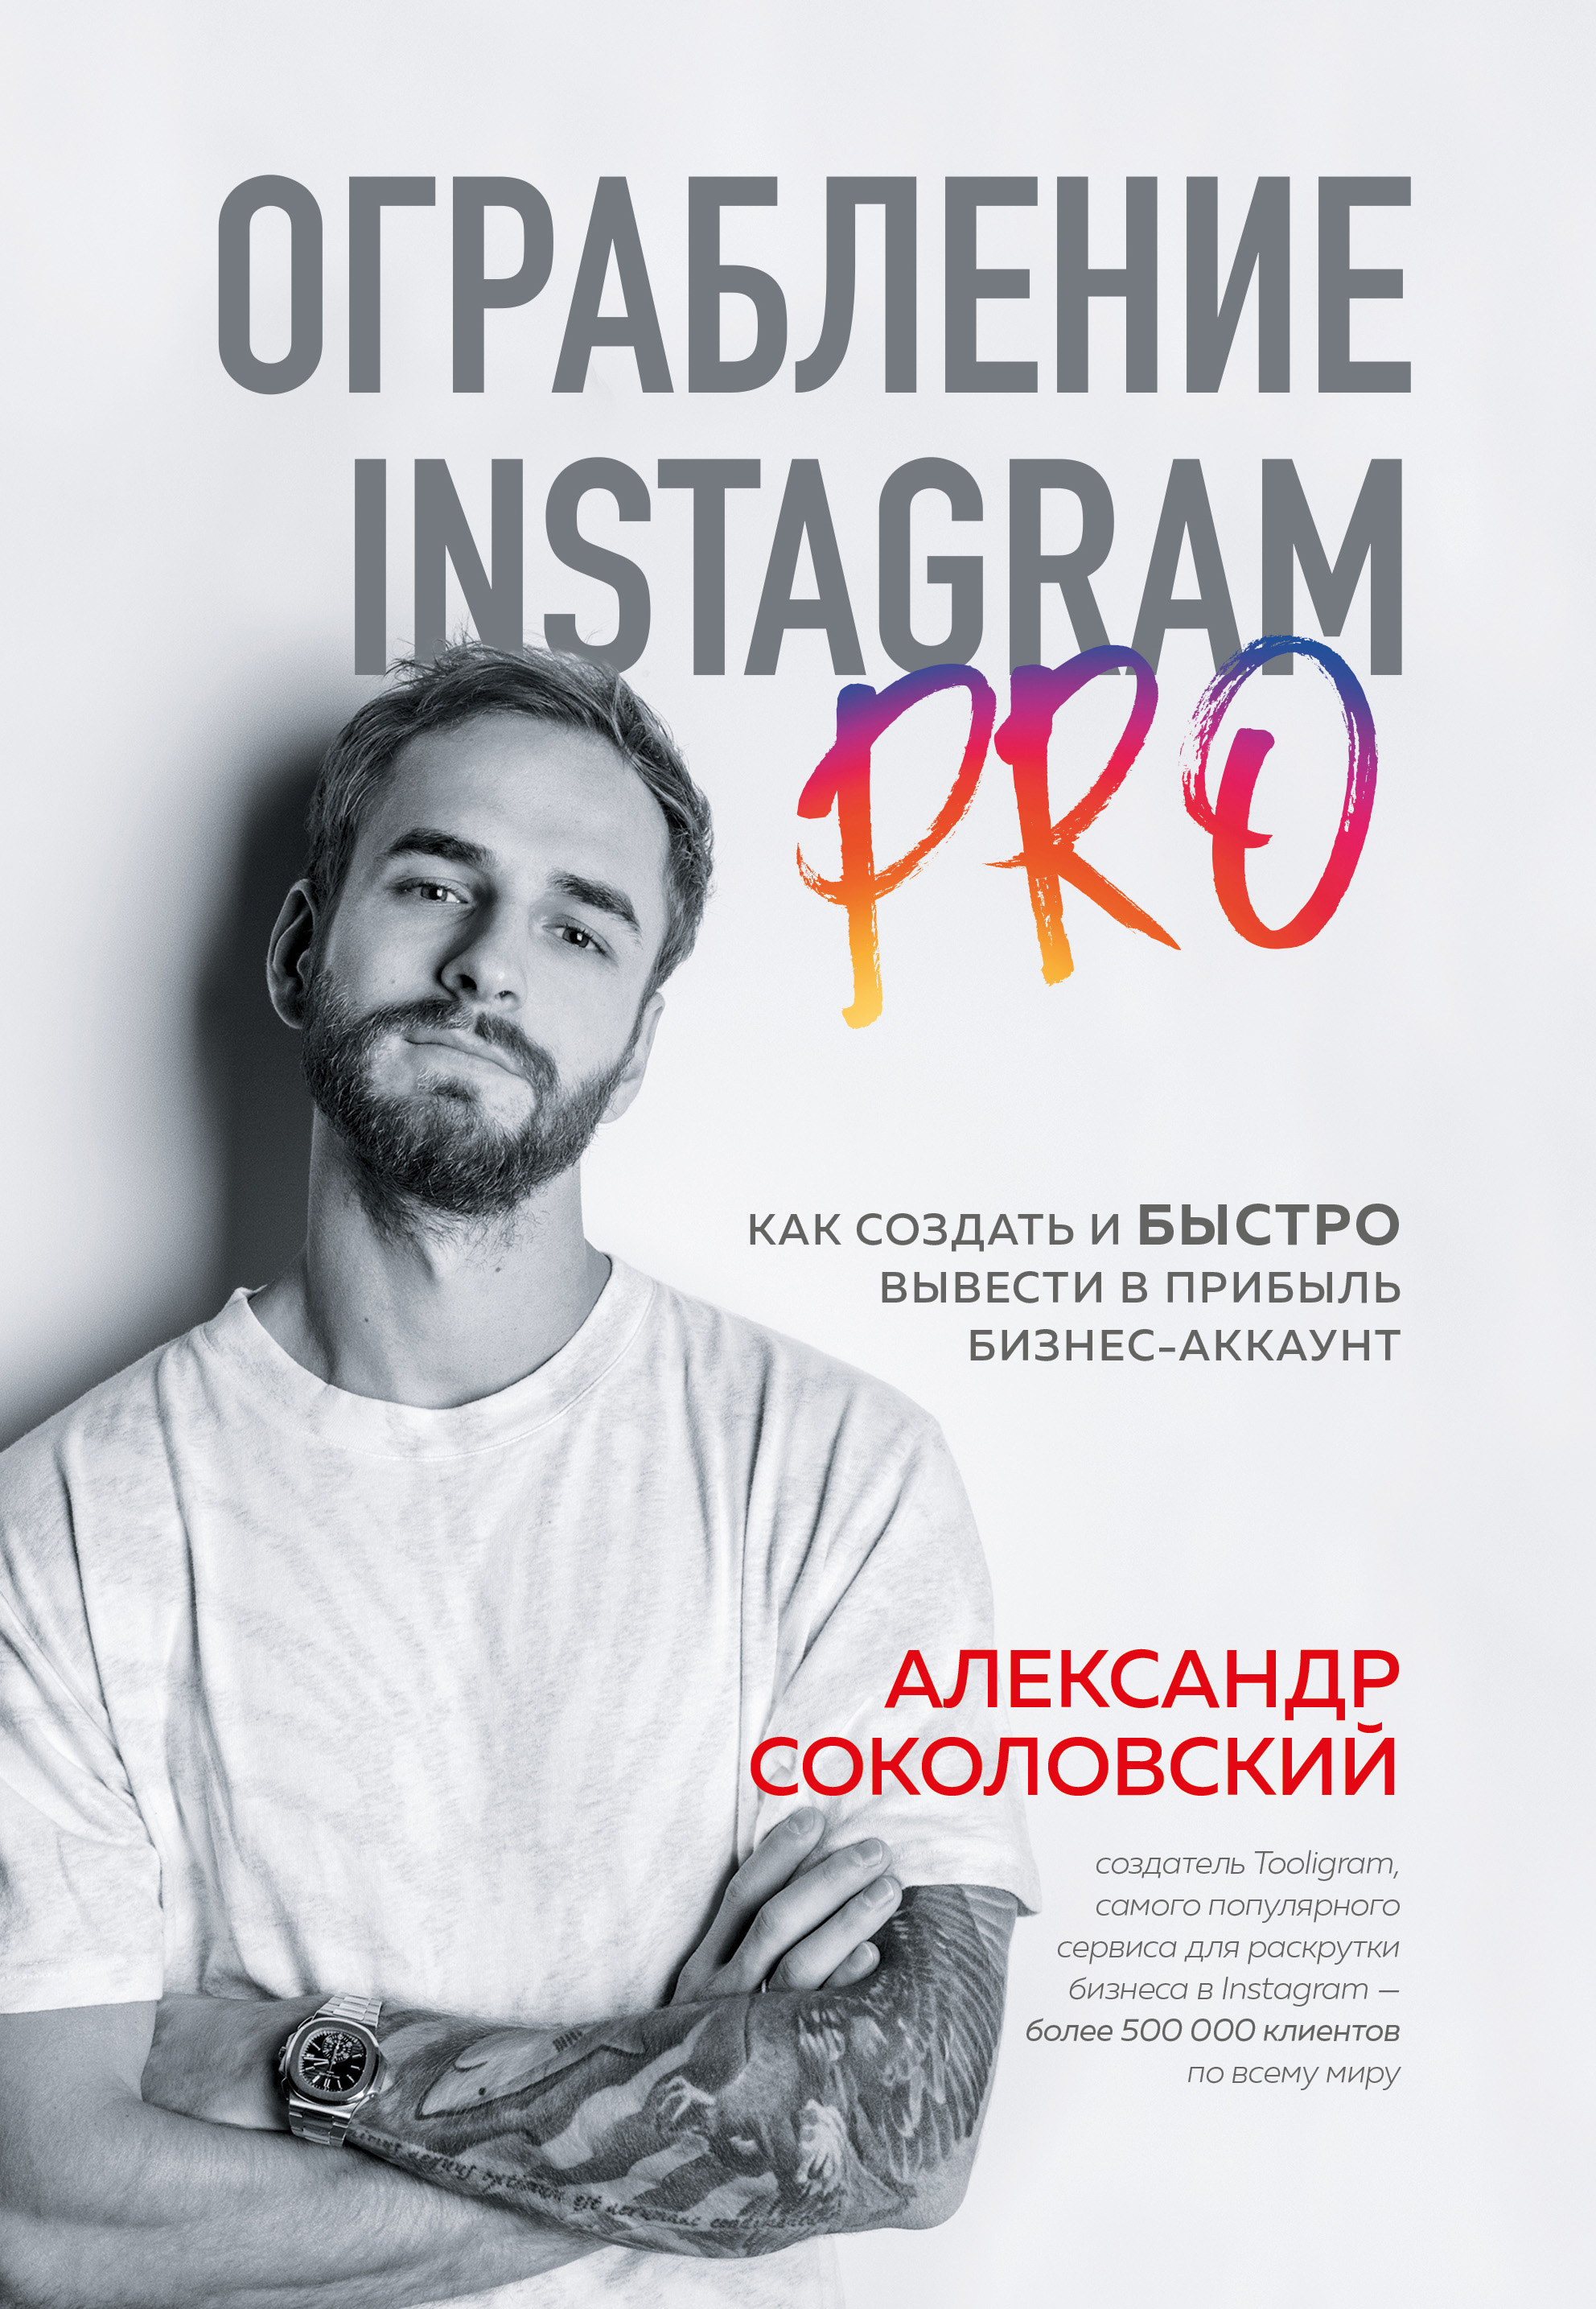 Ограбление Instagram PRO. Как создать и быстро вывести на прибыль бизнес-аккаунт читать онлайн